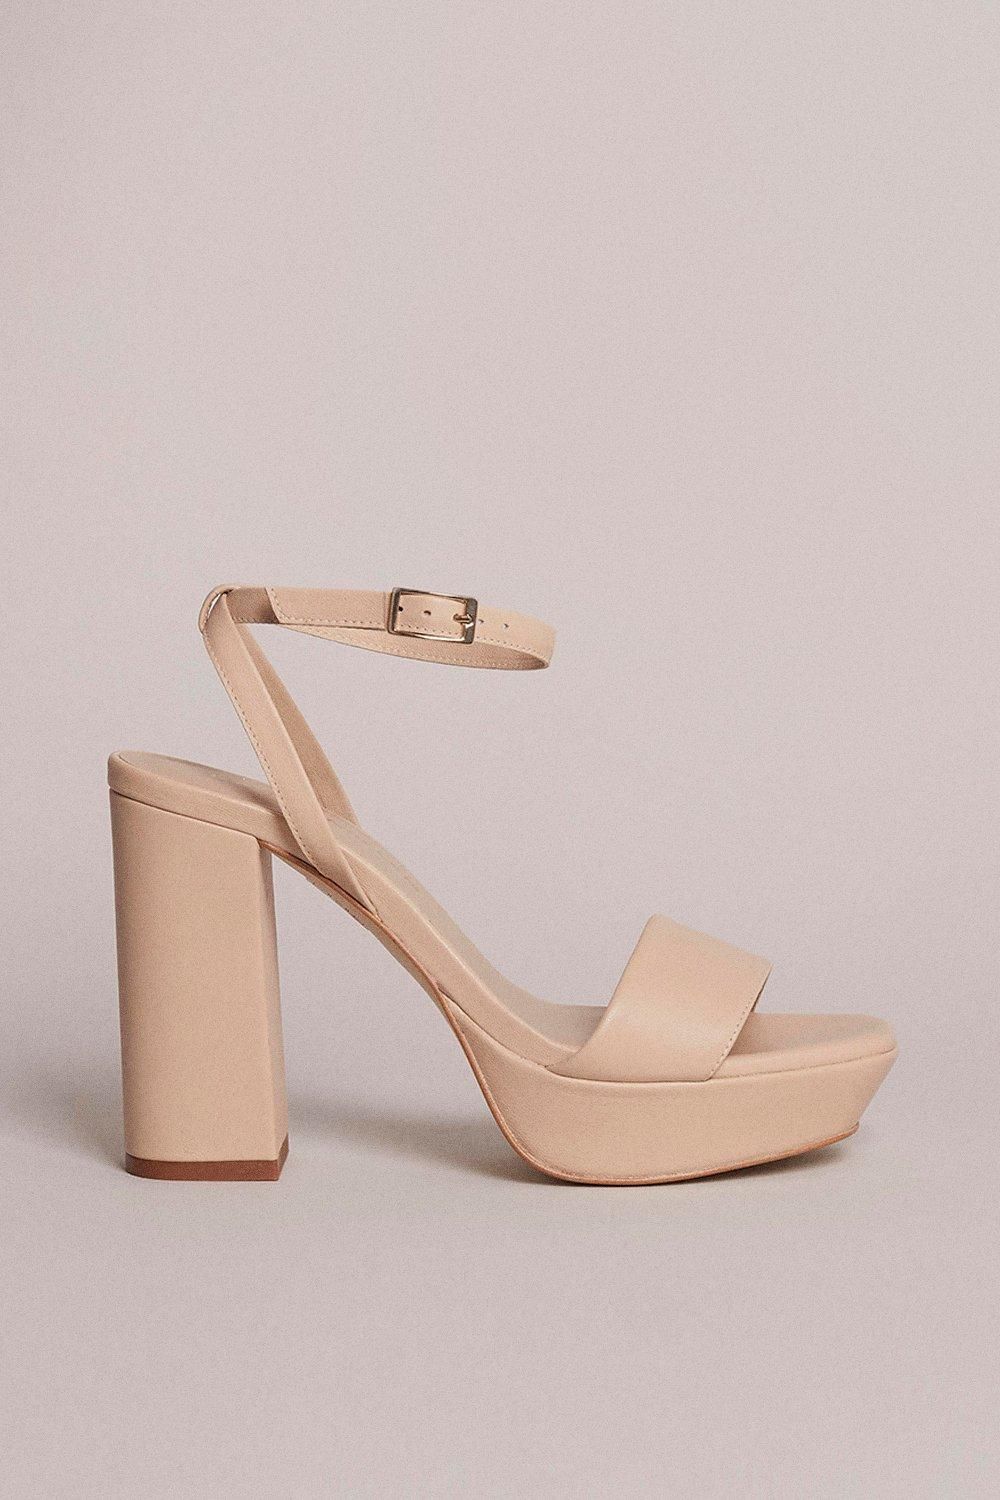 70's Leather Platform Sandal | Karen Millen UK & IE